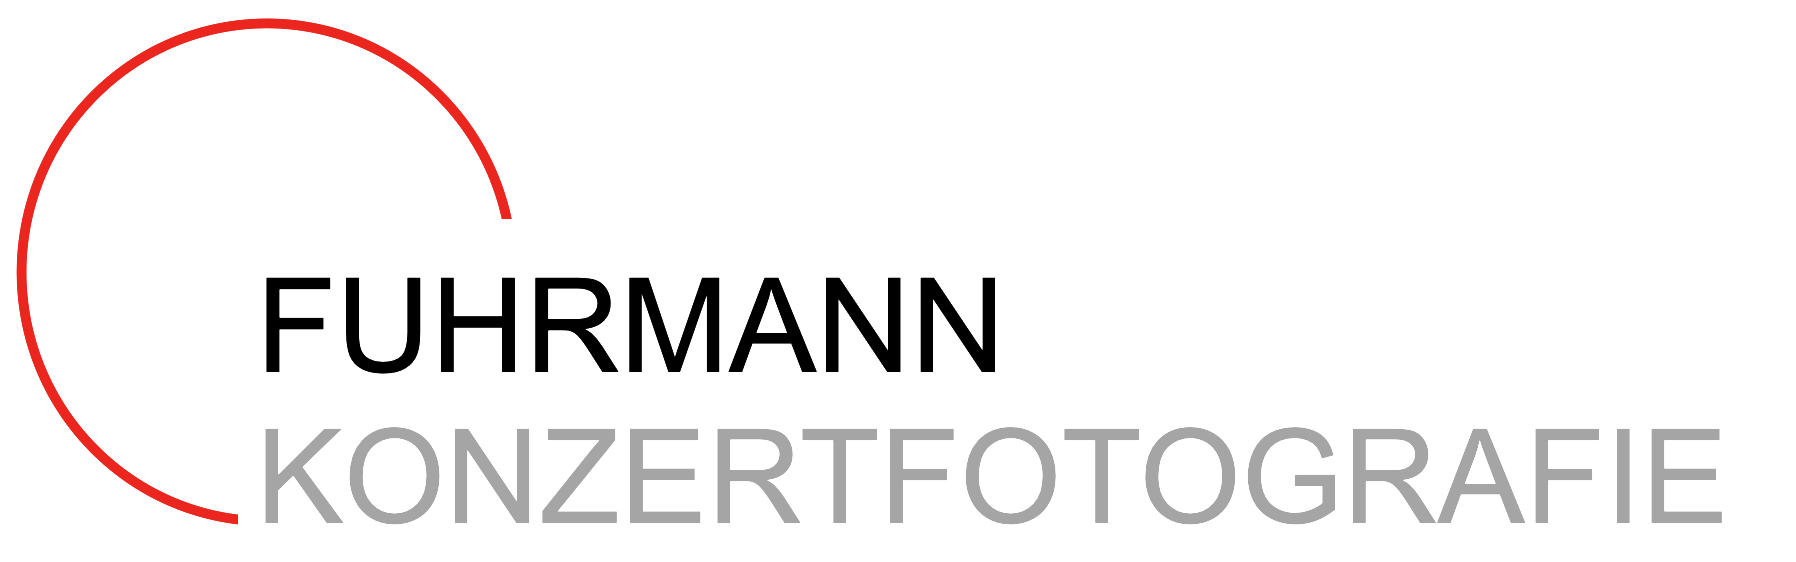 Das Logo von Fuhrmann Konzertfotografie